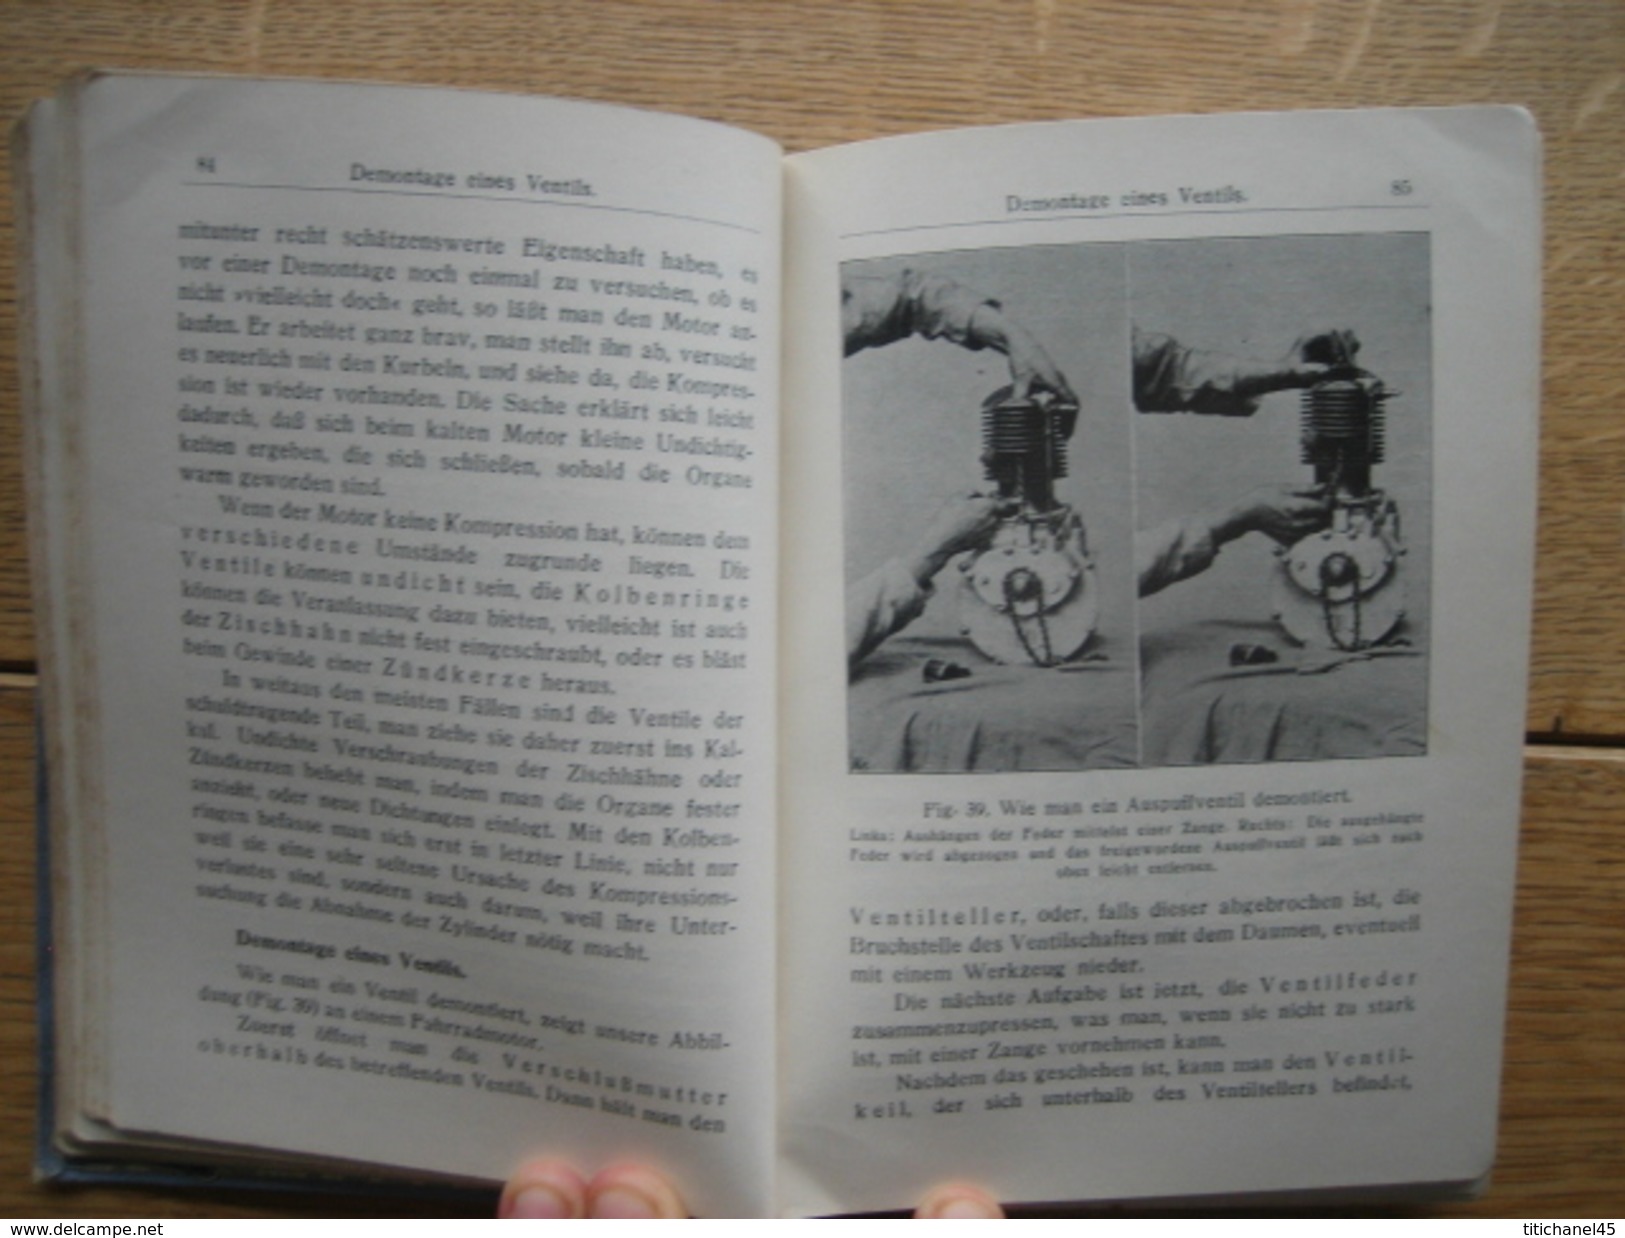 1915 OHNE CHAUFFEUR von FILIUS - Handbuch für automobilisten und motorradfahrer